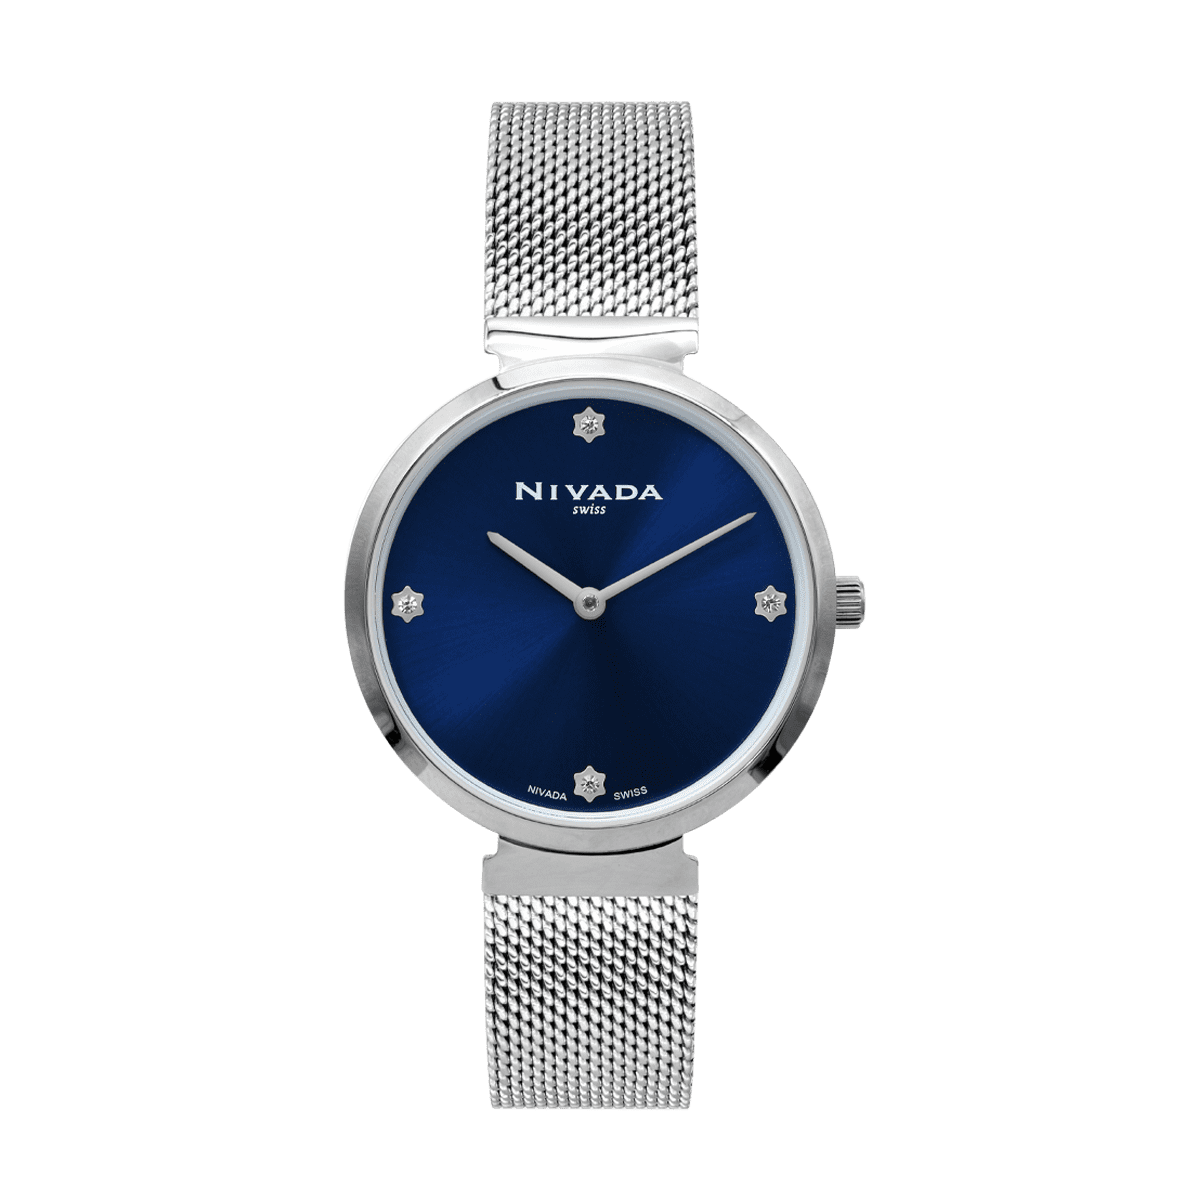 Diplomat Para Dama - Altitud 2304 - Reloj Nivada Swiss